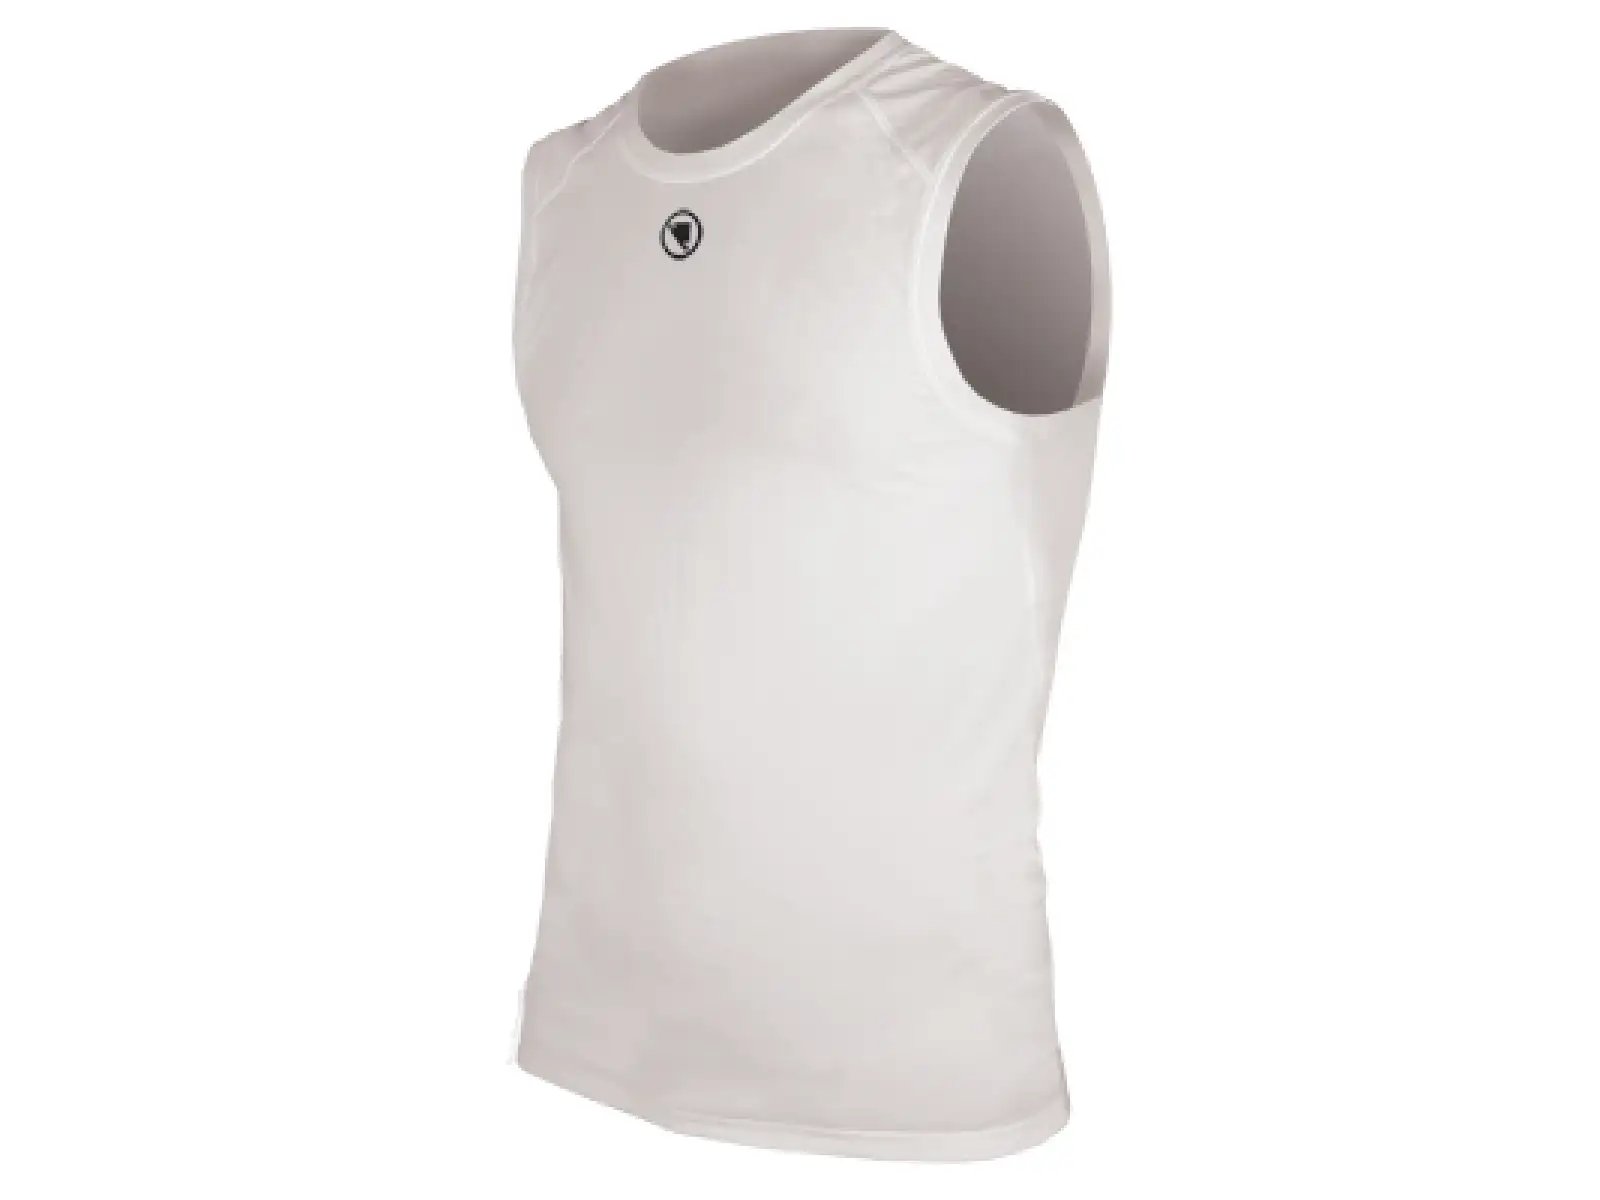 Endura Translite pánske tričko bez rukávov biele